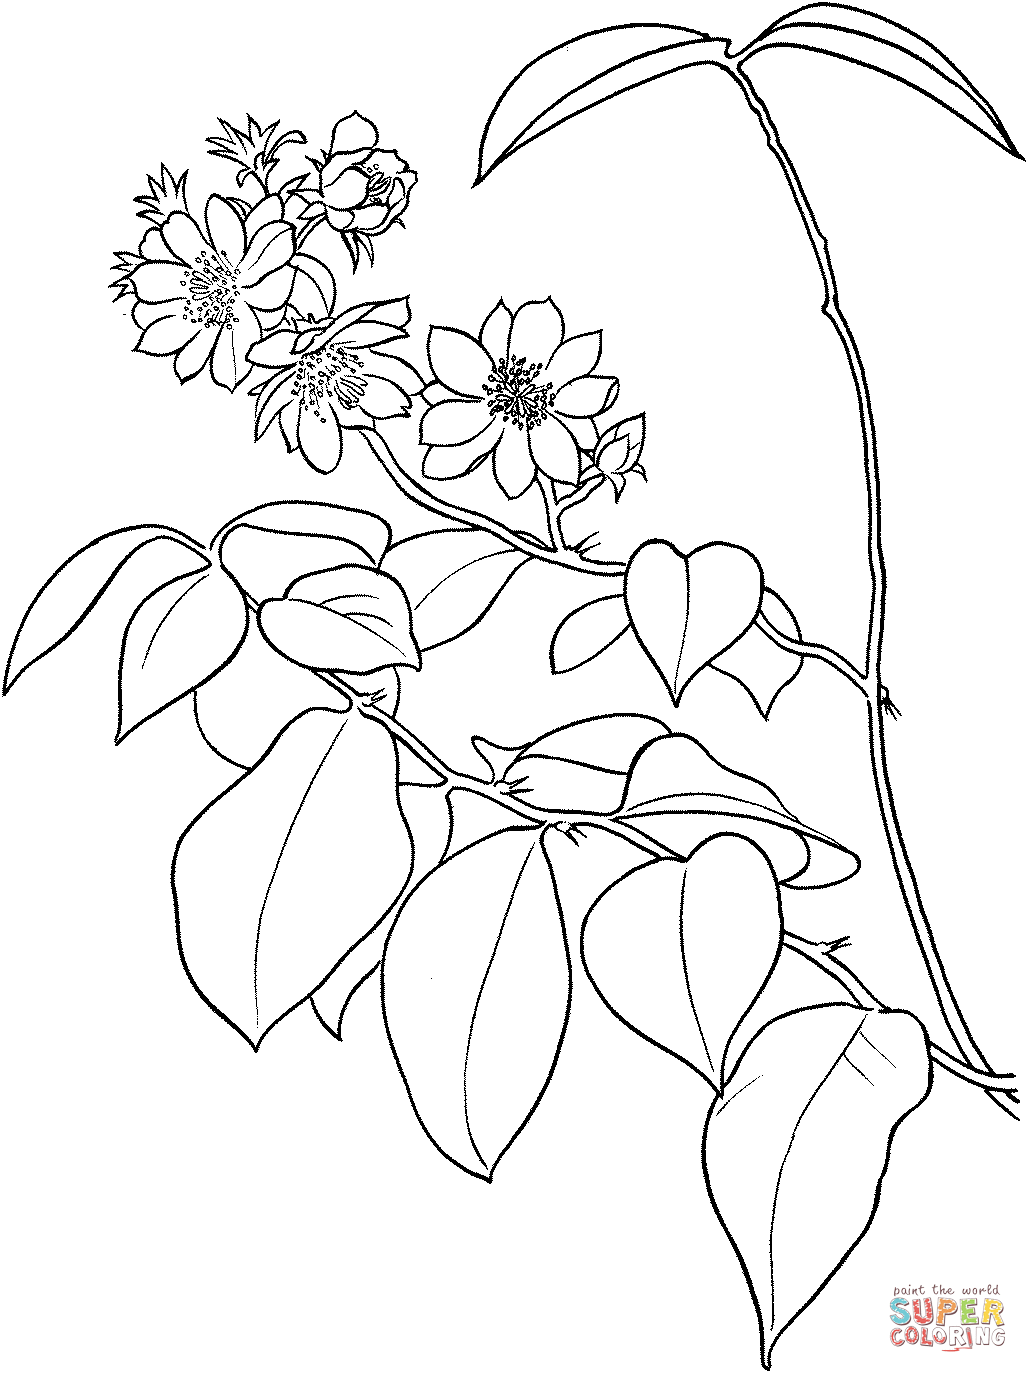 Pereskia Aculeata или Барбадосский крыжовник или Листовой кактус от Cactus